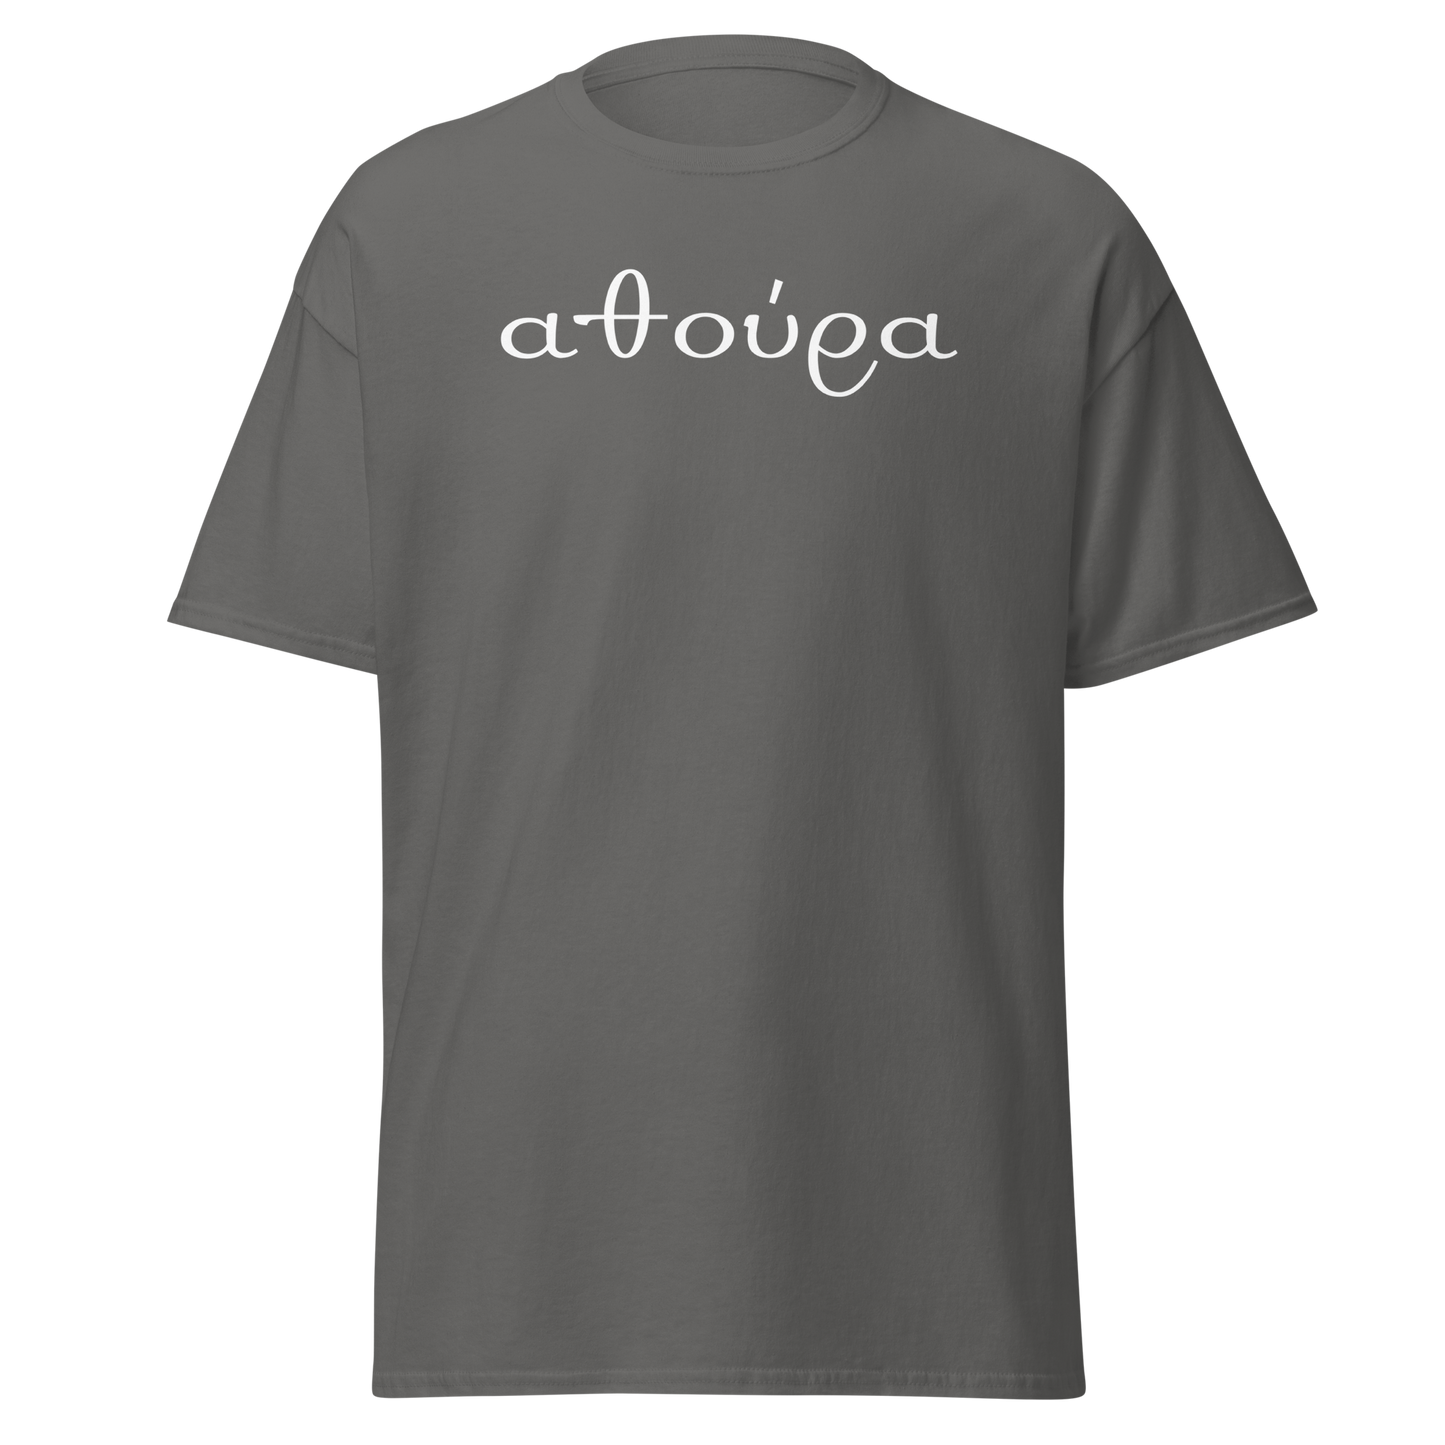 athoura T-Shirt